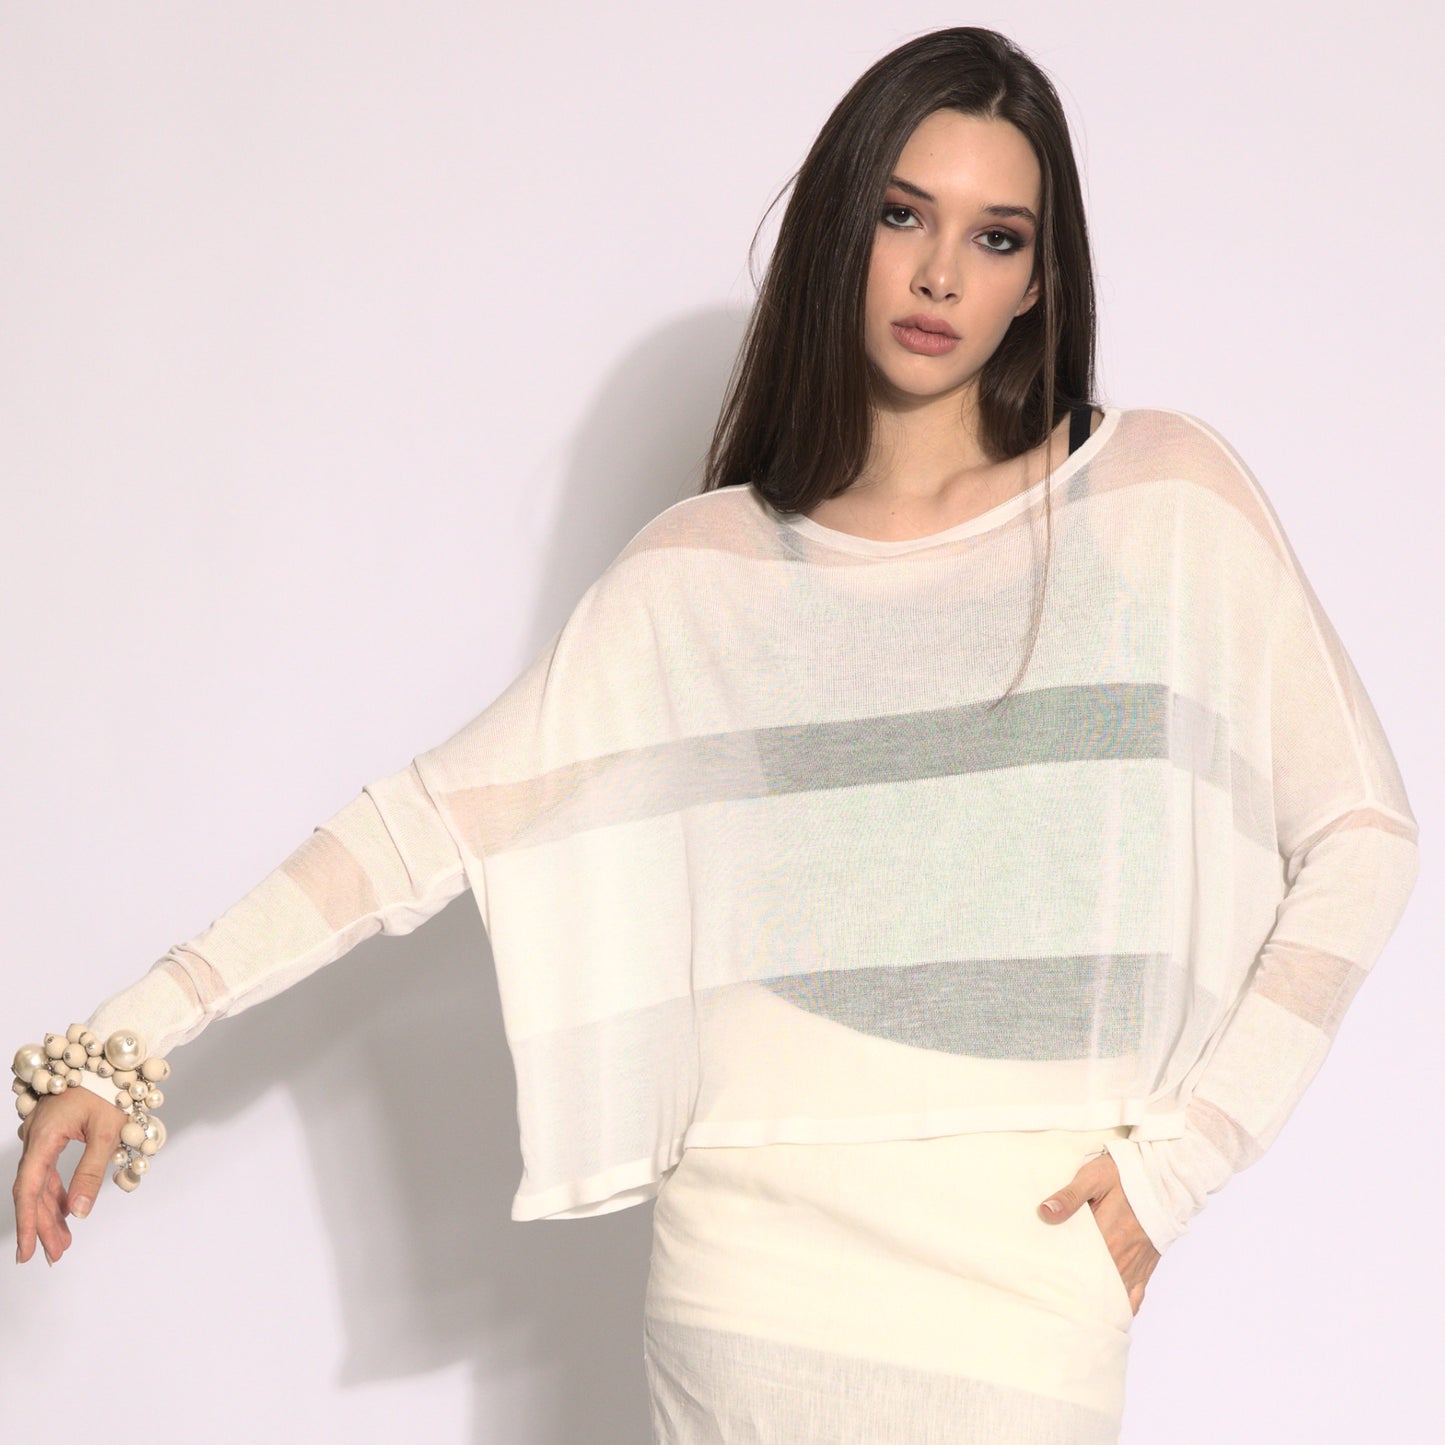 Giselle - Blusa de tricot listrada em off-white com transparencias